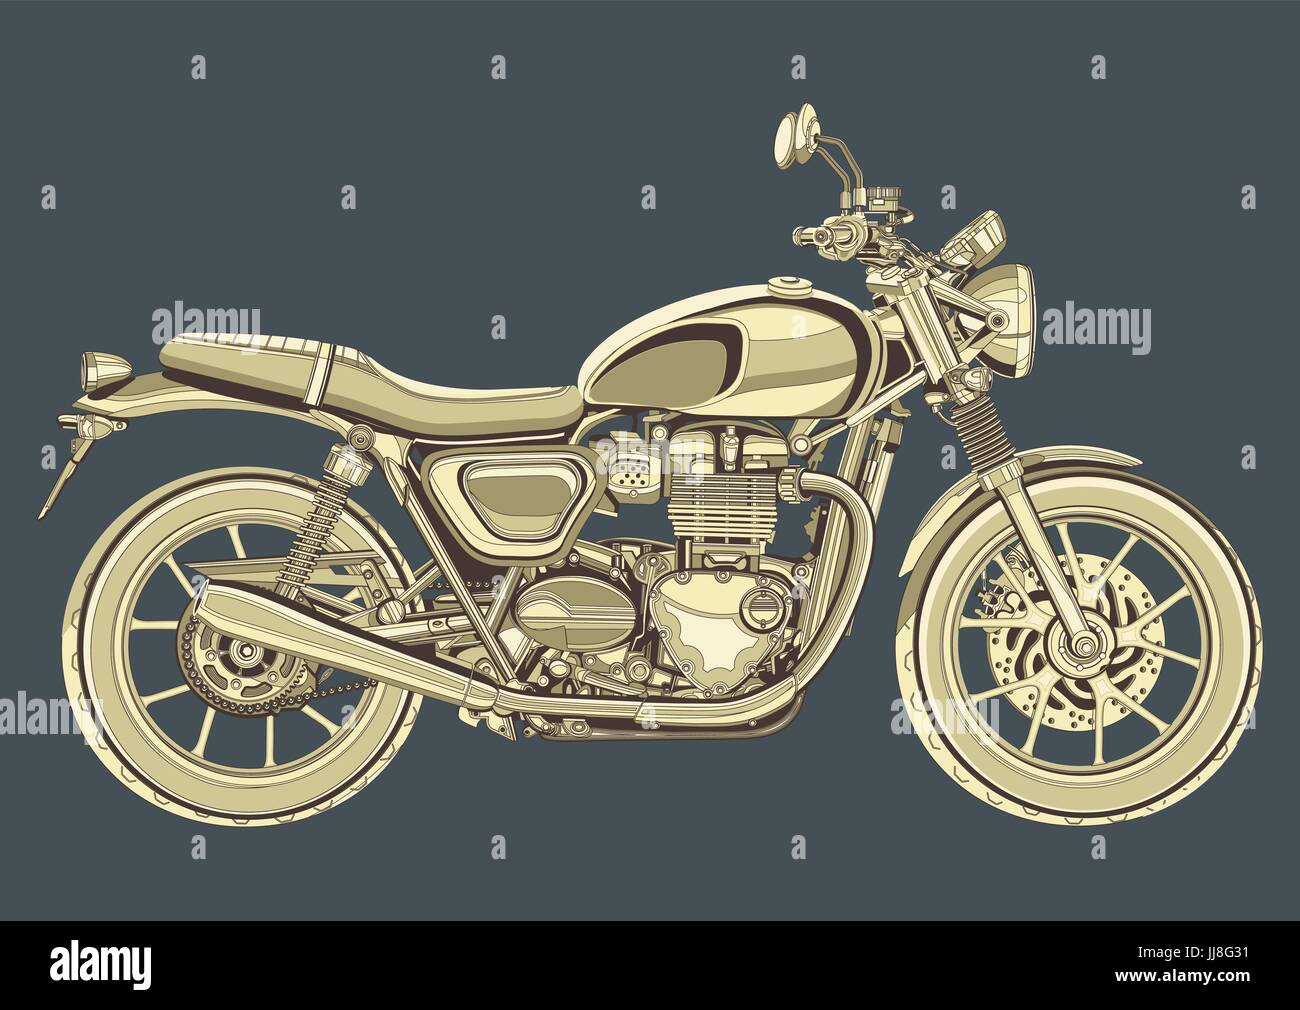 Motorrad-Vektor, Jahrgang zeichnen. Gelbe Motorrad halbe Gesicht mit vielen Details auf einem grauen blauen Hintergrund Stock Vektor